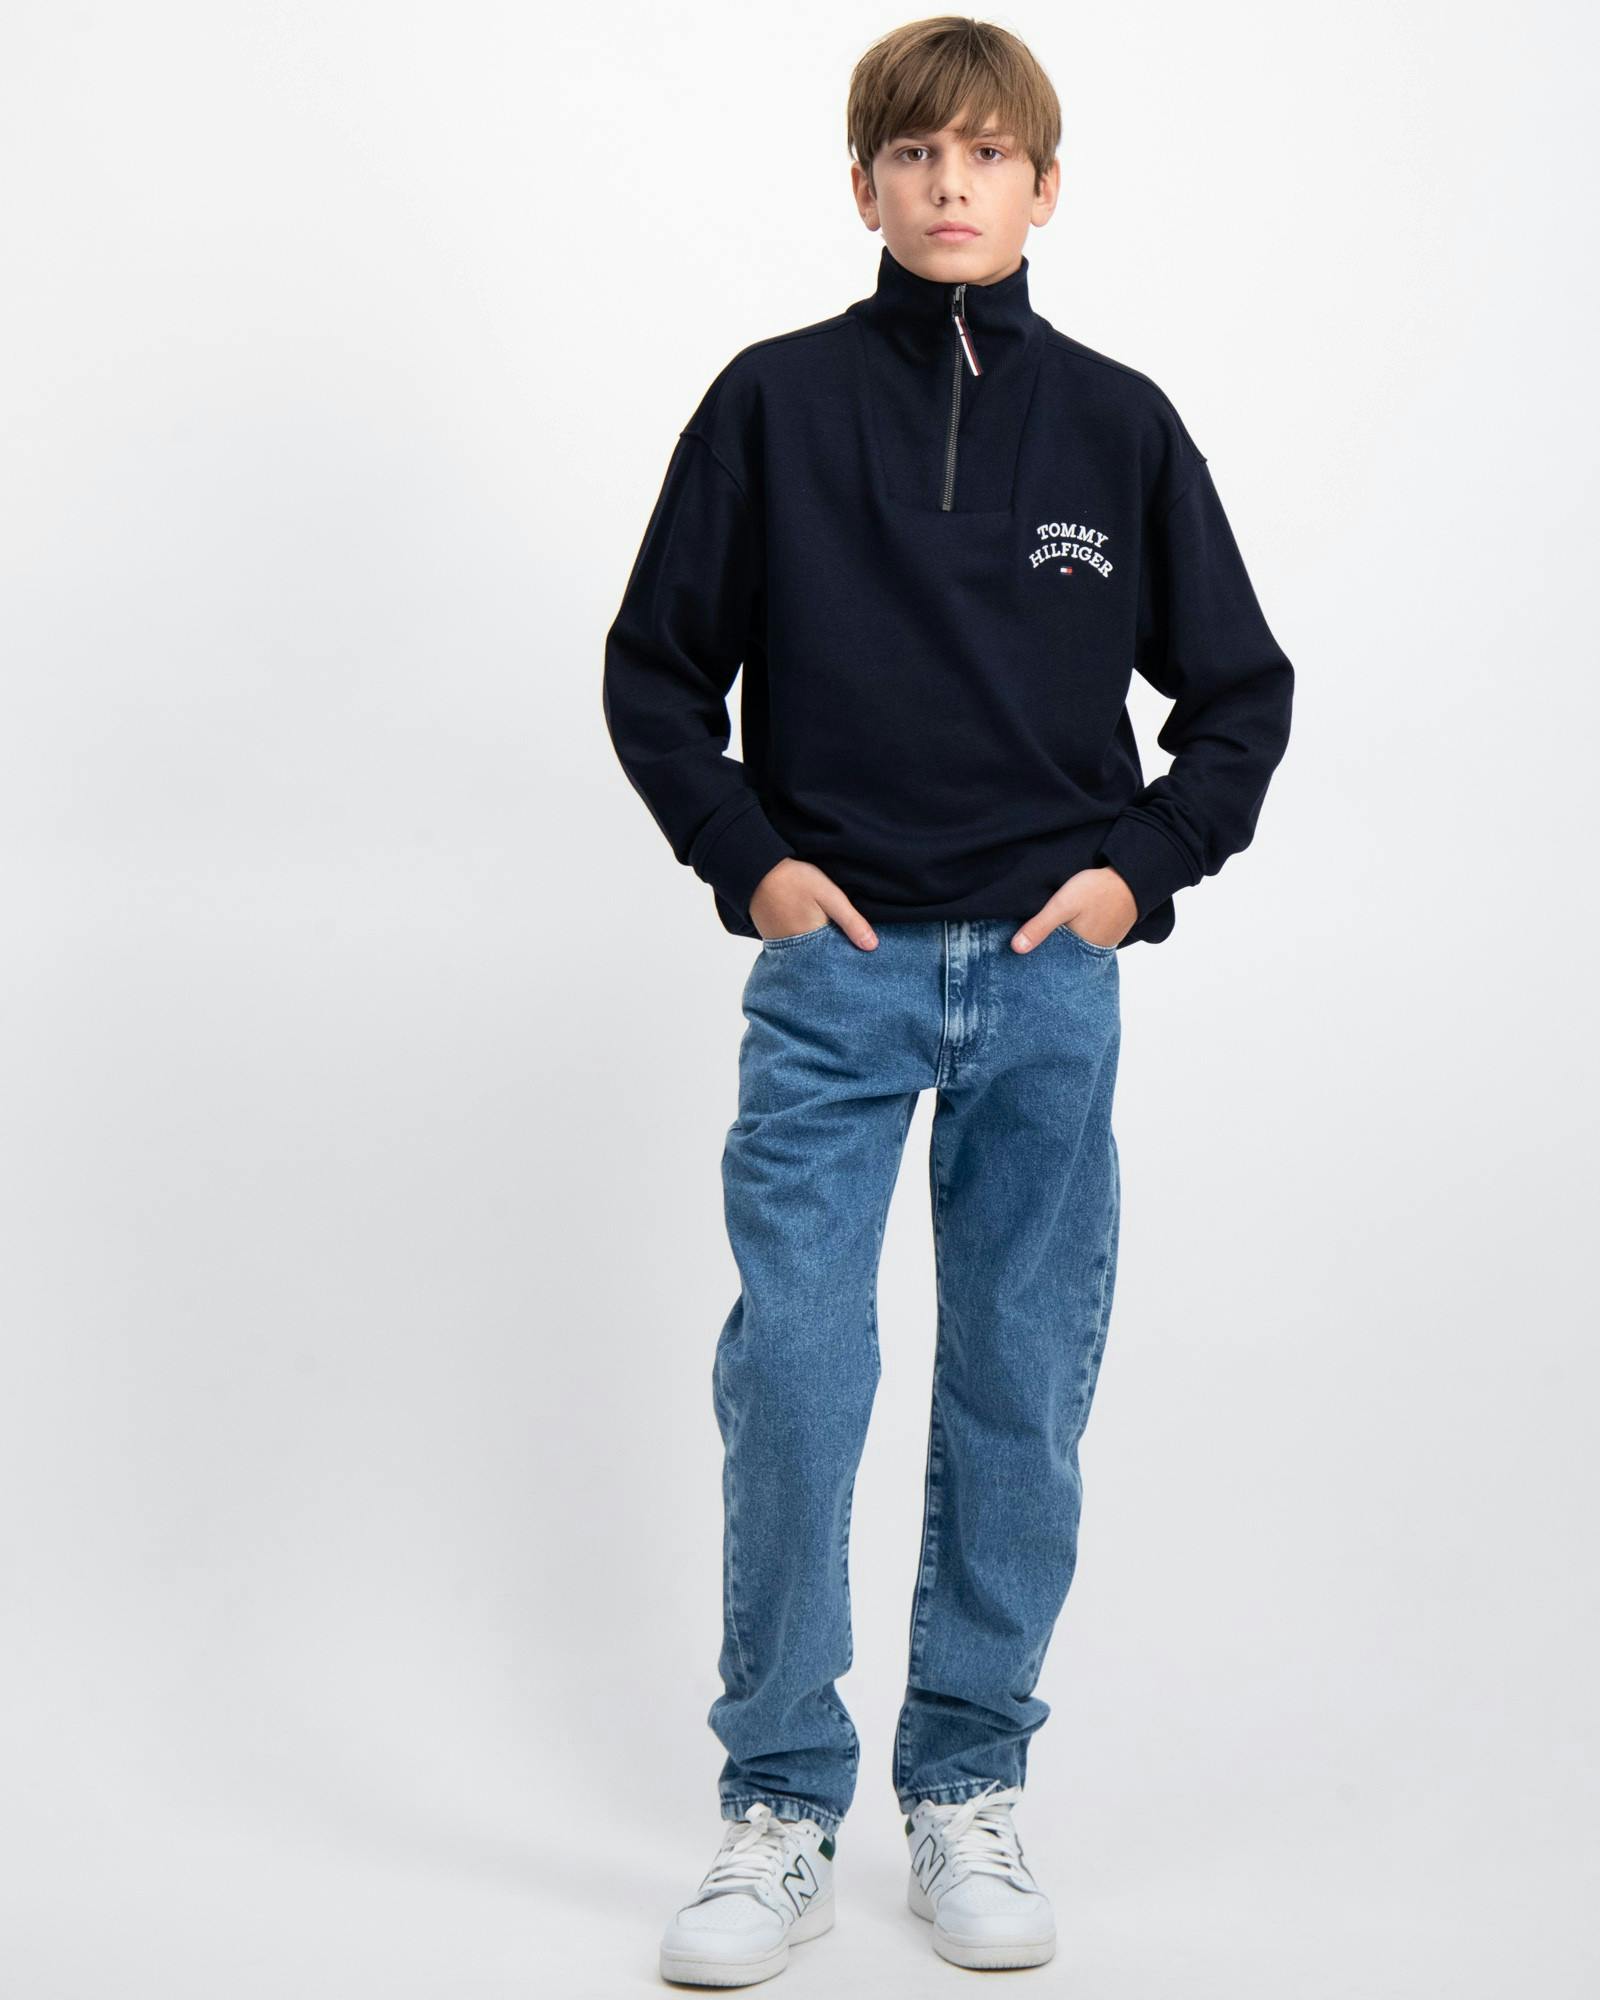 Tommy Hilfiger Jeans für Kinder und Jugendliche | Kids Brand Store